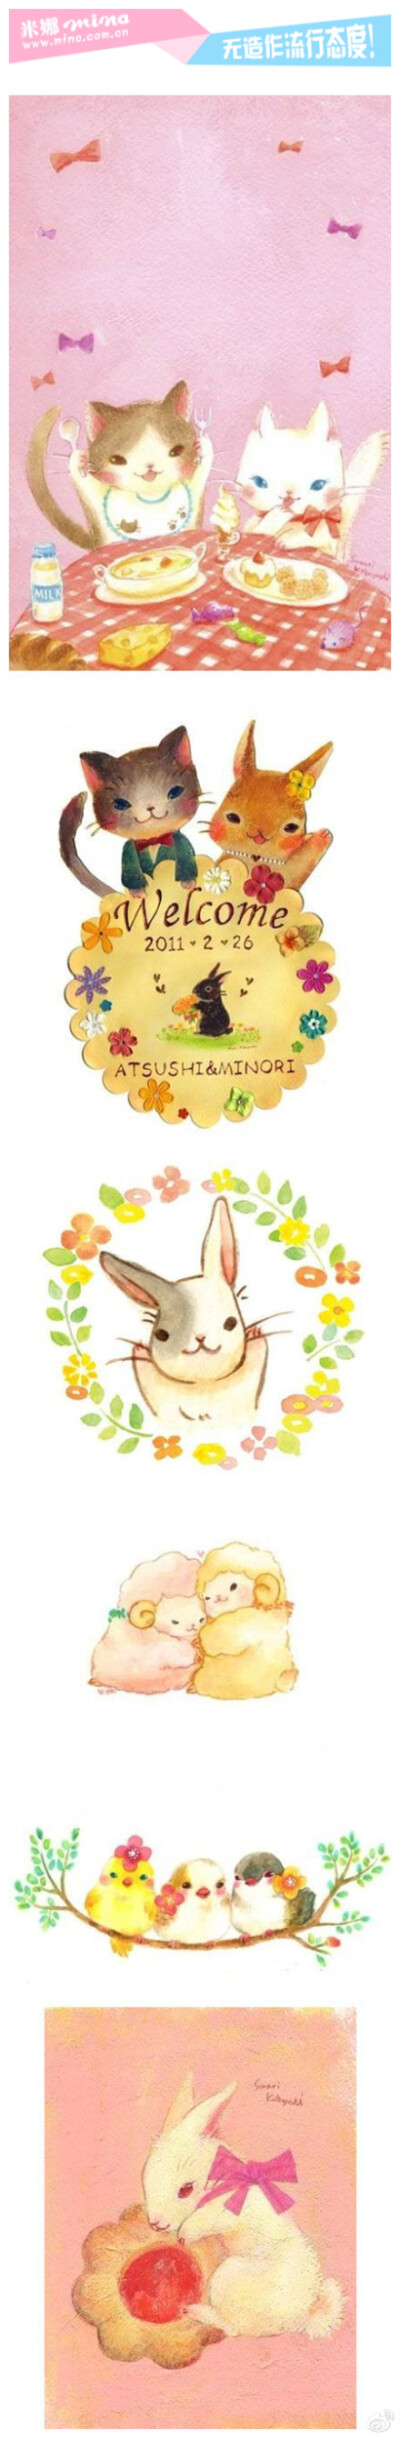 日本插画家的治愈系漫画,笔下的每一只小动物都充满了温暖的笑容